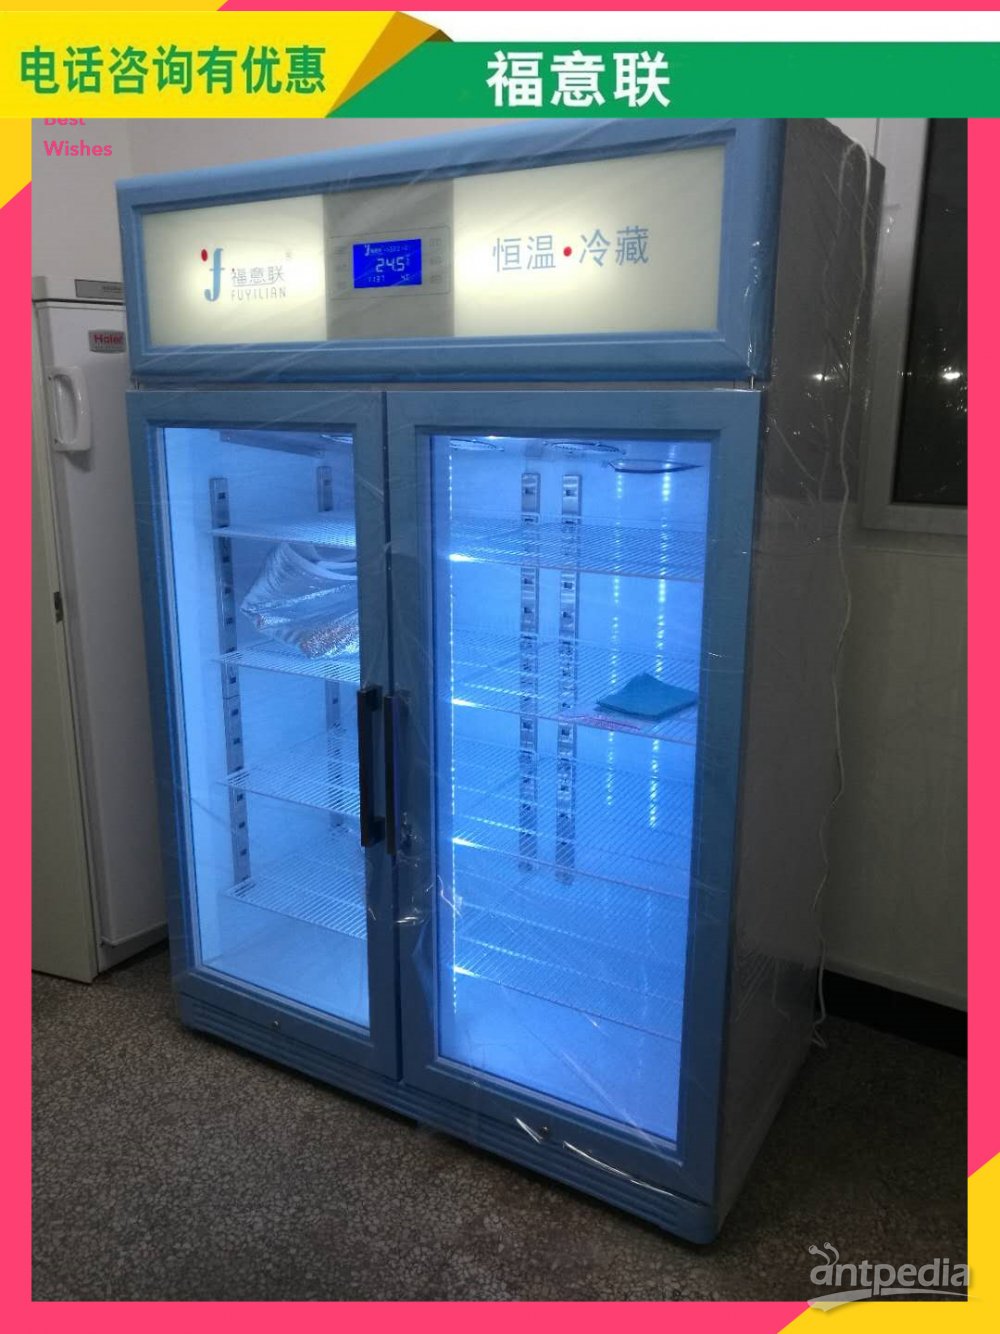 科研实验室用蛋白纯化仪物品冷藏4度层析柜